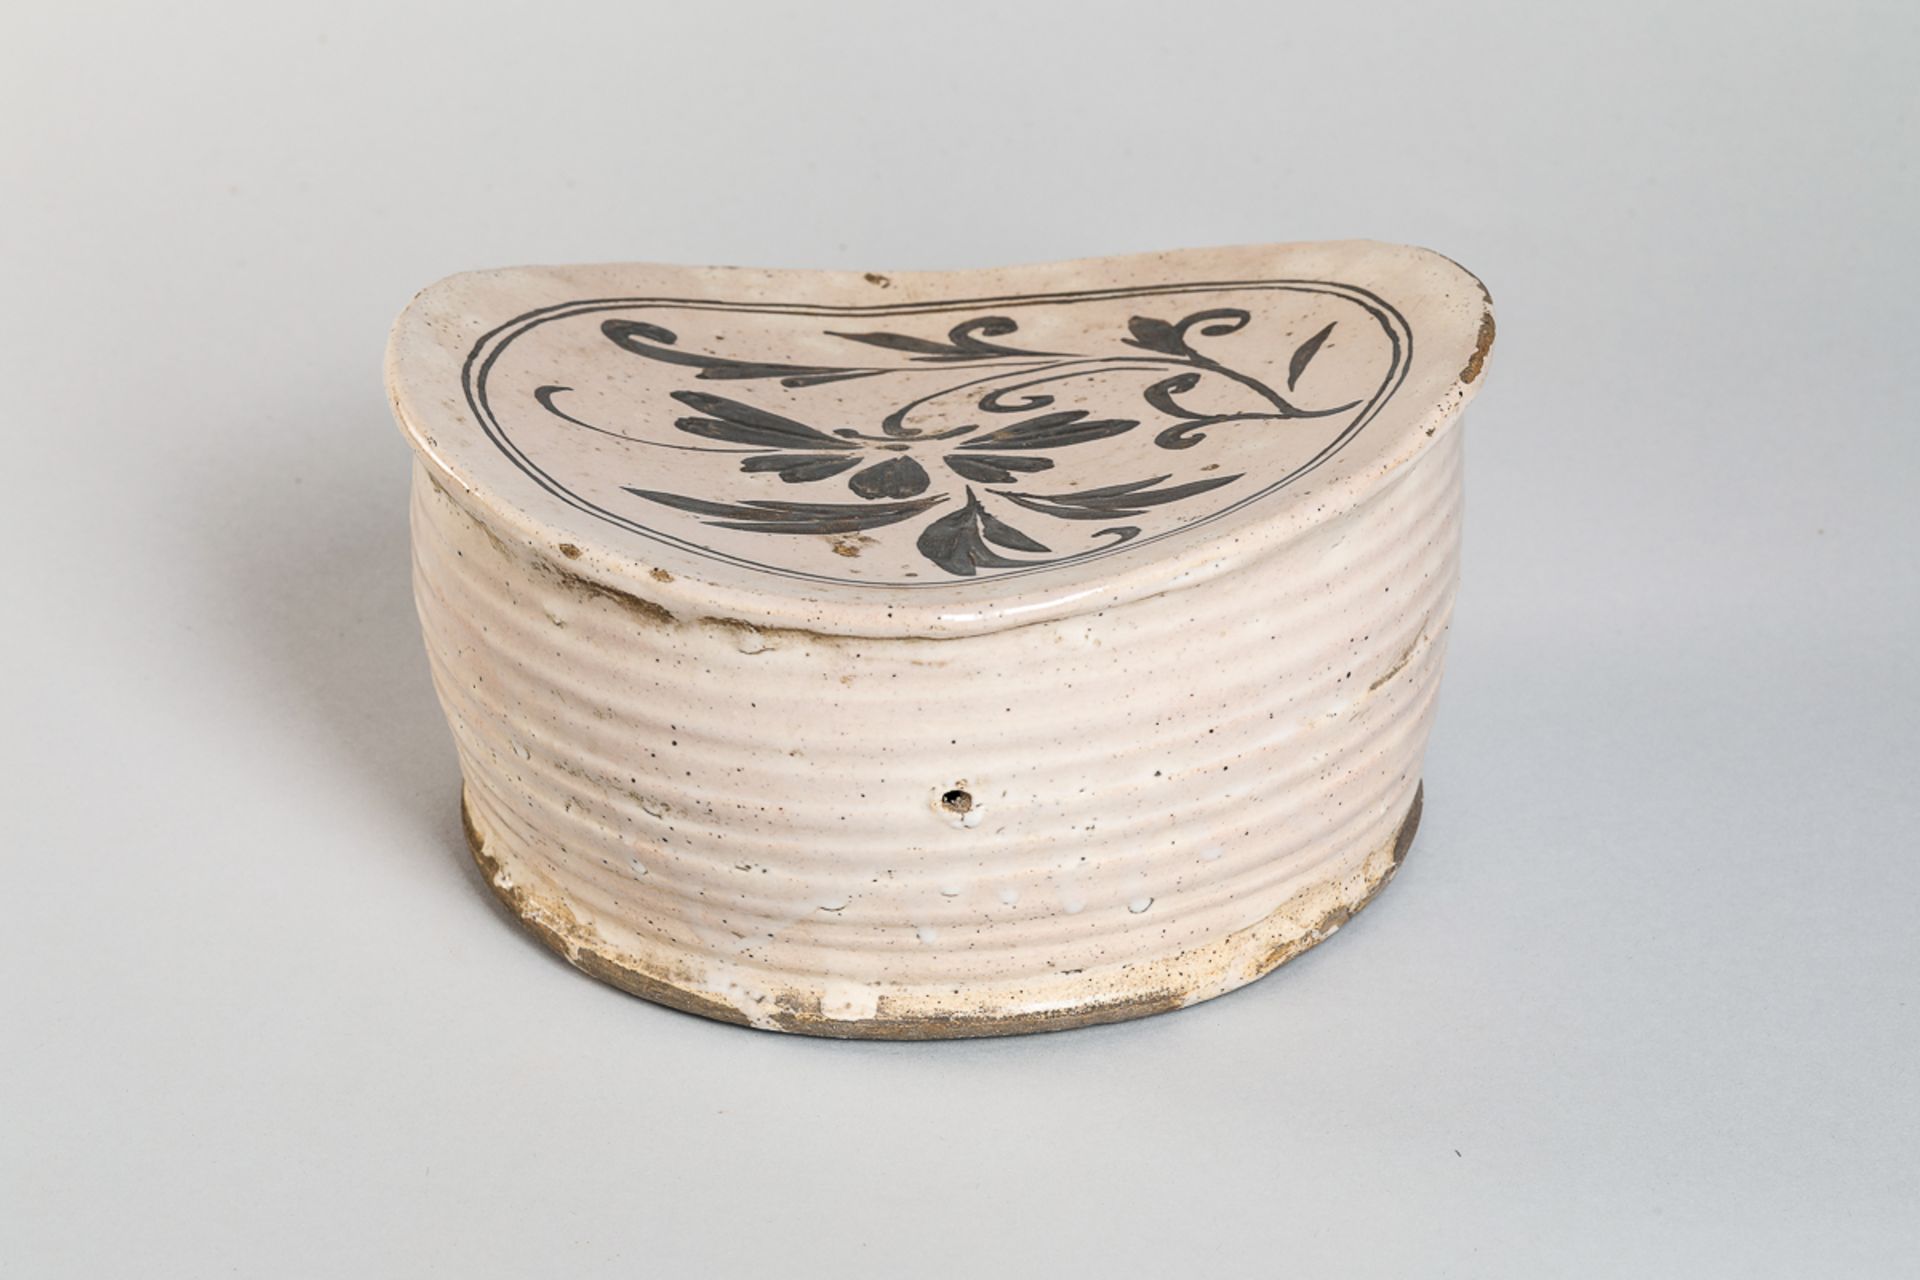 Repose nuque cizhu en céramique à décor floral brun sur glaçure monochrome beige crémeux Chine - Image 5 of 5